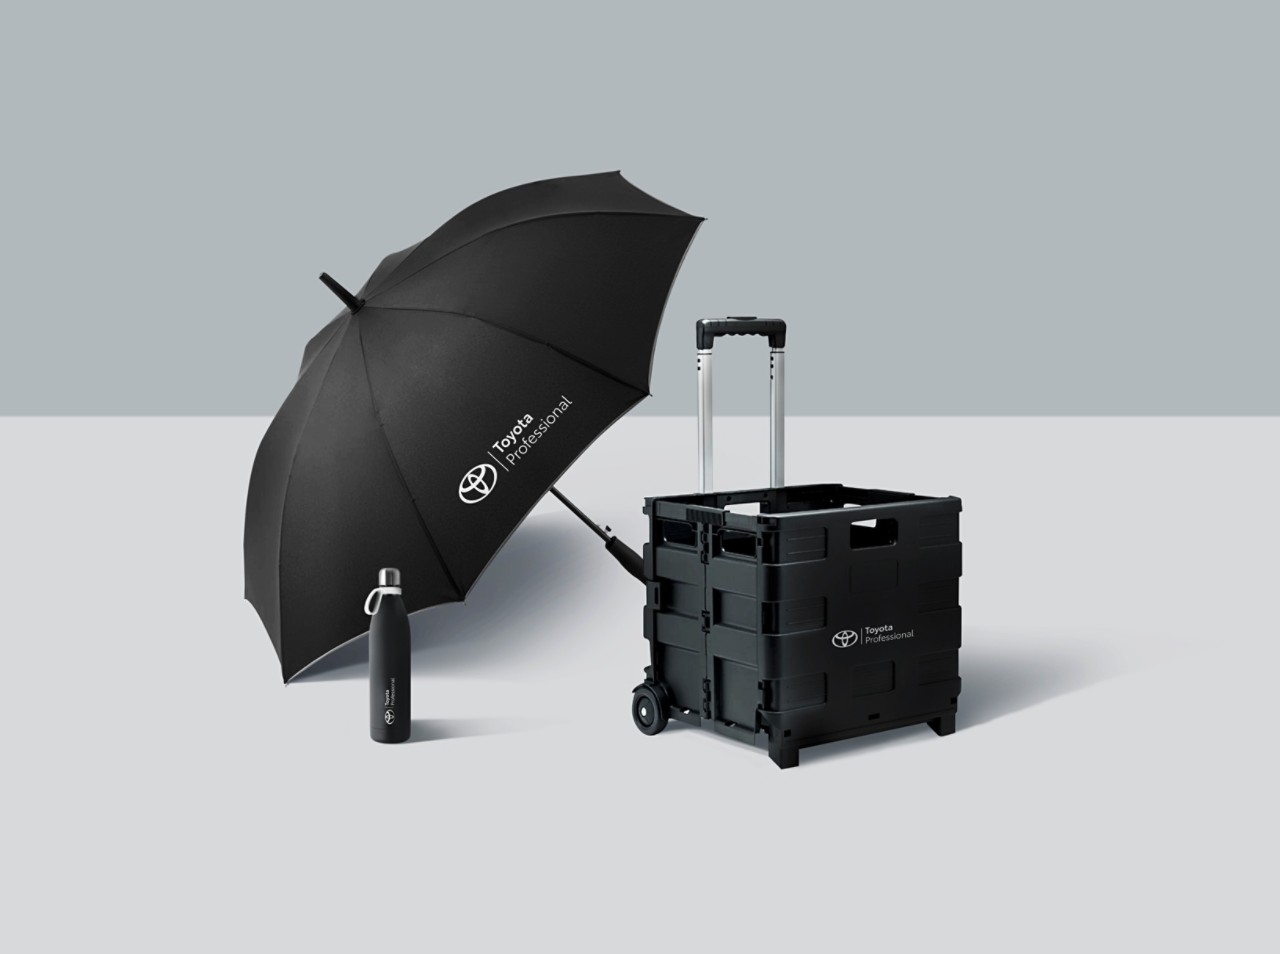 Regenschirm, Wasserflasche und Handwagen mit Toyota Professional Branding 